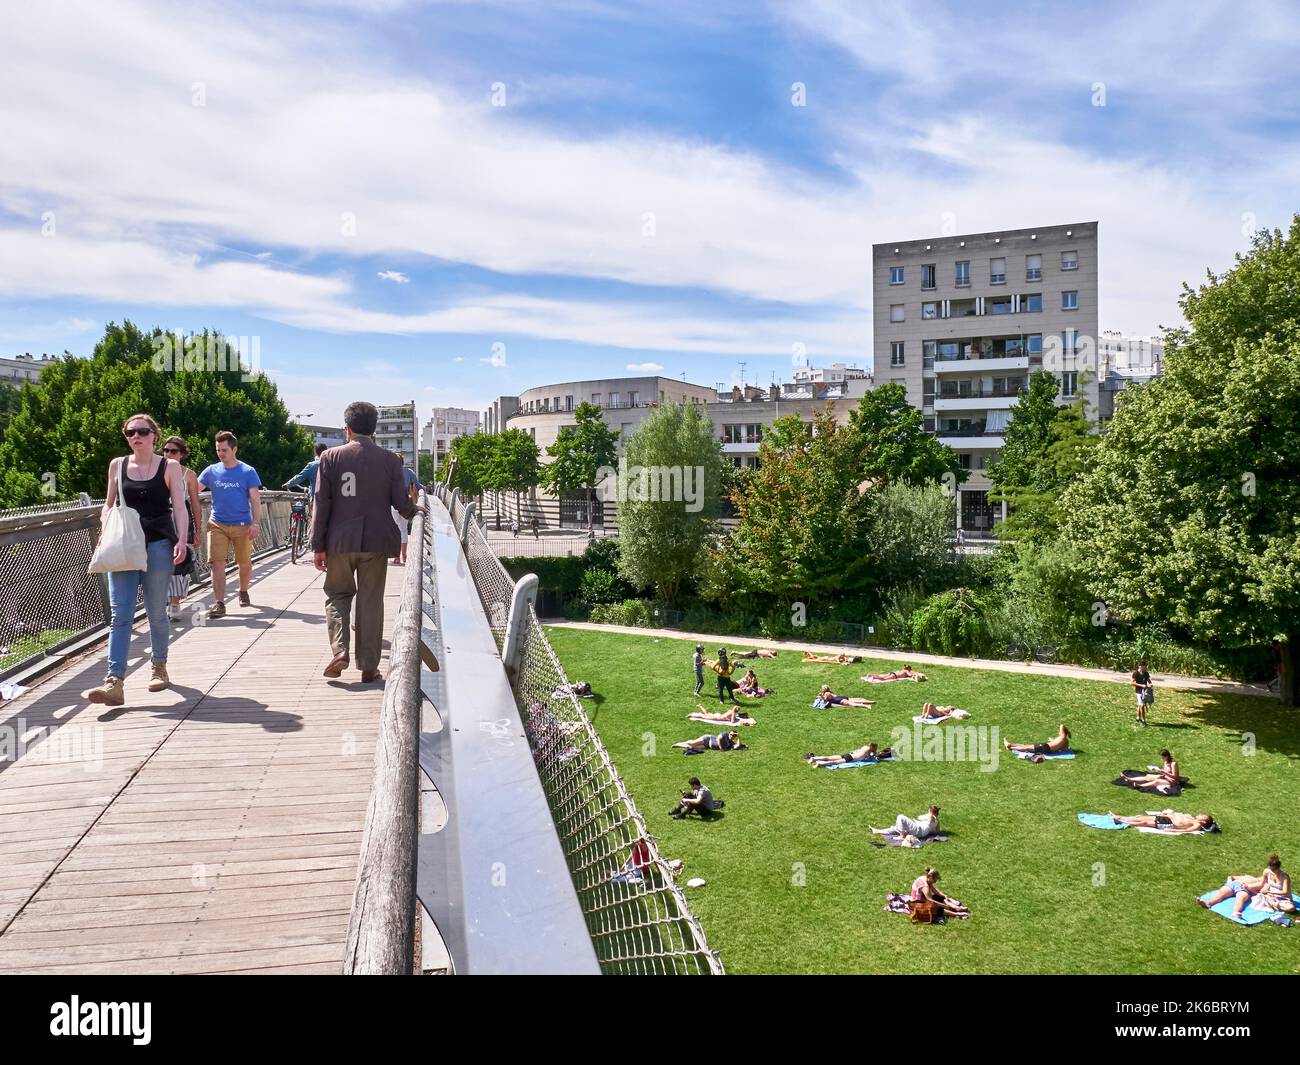 Cintura verde, zona pedonale nel 12th ° arrondissement di Parigi (quartiere), con il Parco Reuilly Paul Pernin. Camminatori sulla passerella e persone sdraiate Foto Stock